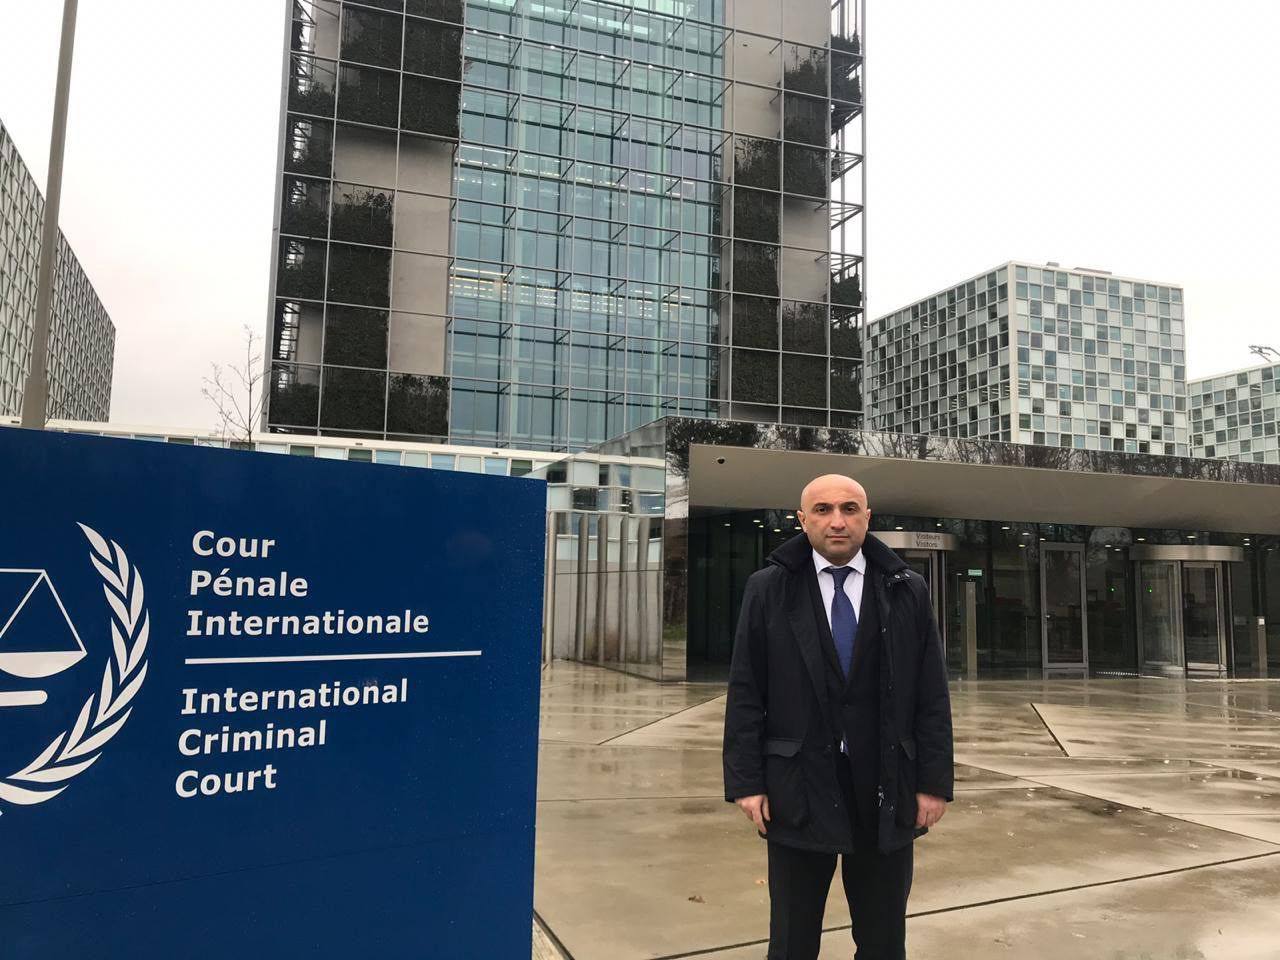 Гюлдуз Мамедов у здания Международного уголовного суда в Гааге, Нидерланды. Фото из личного архива.